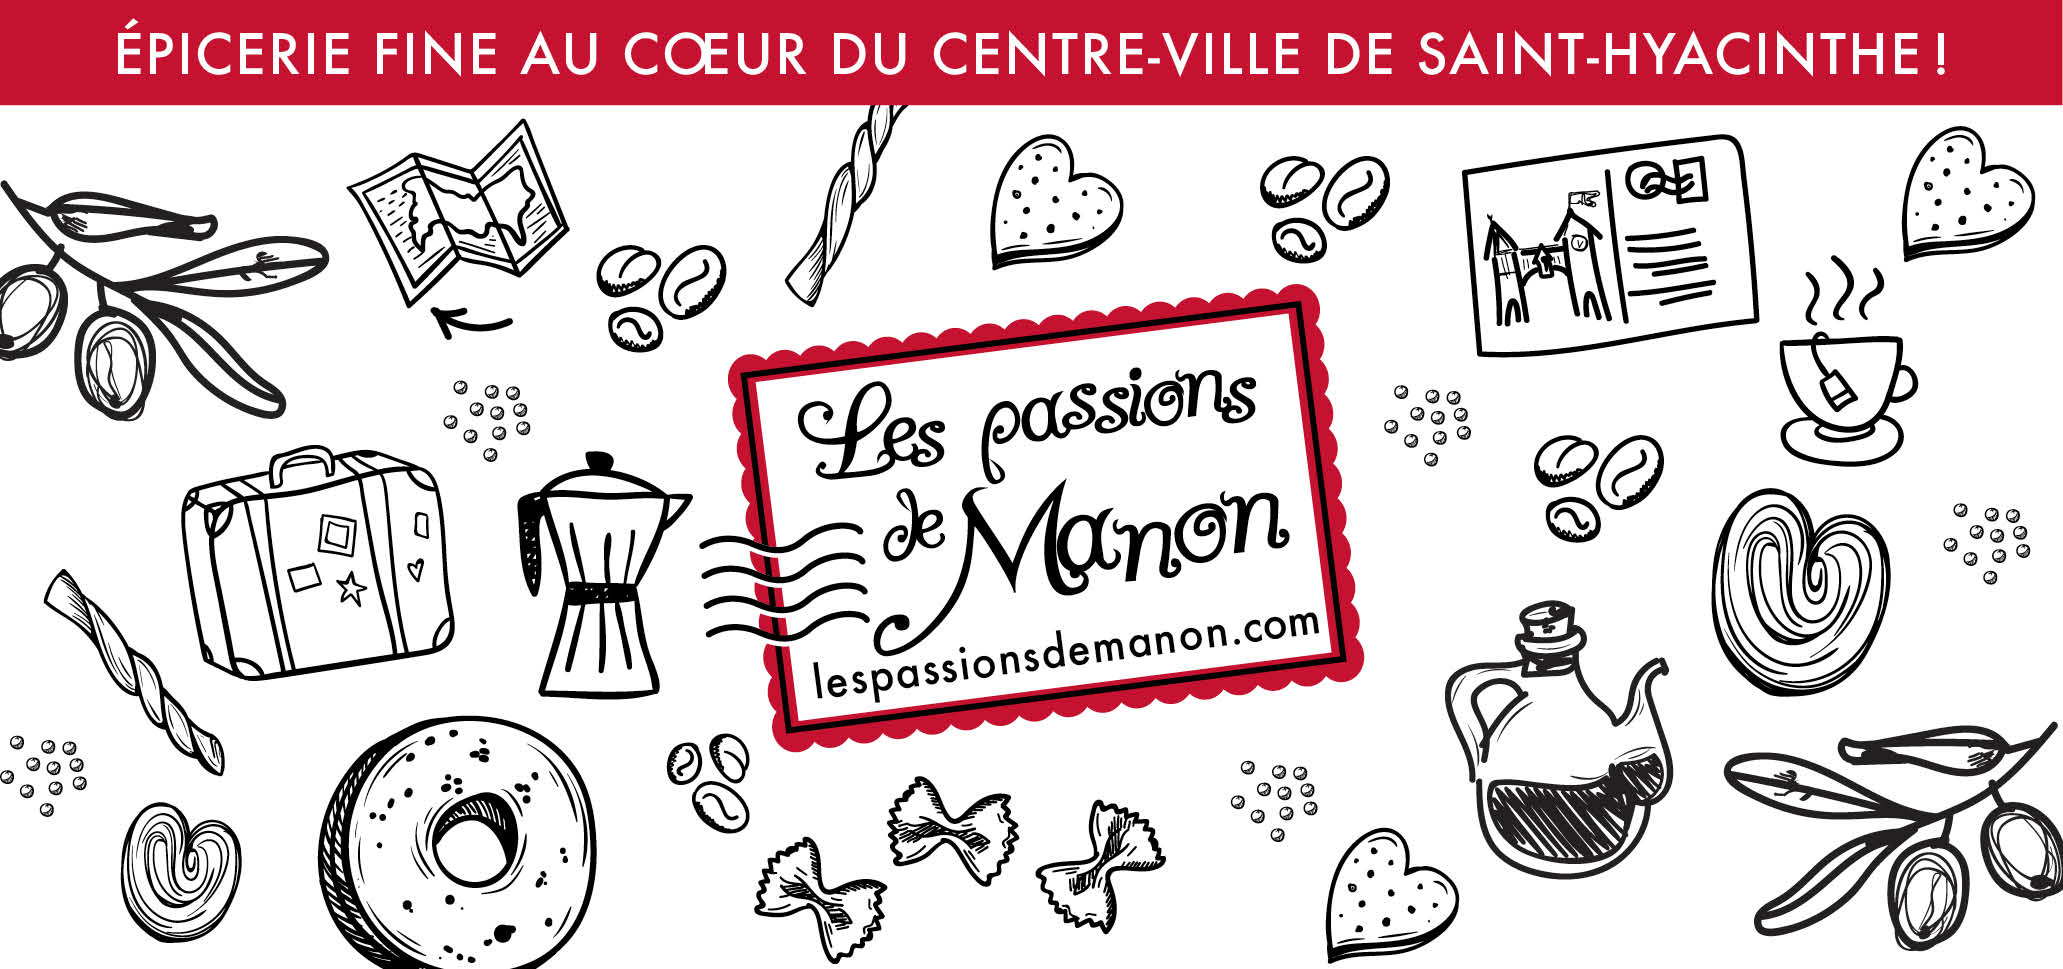 Les Passions de Manon, épicerie fine, Tourisme Saint-Hyacinthe